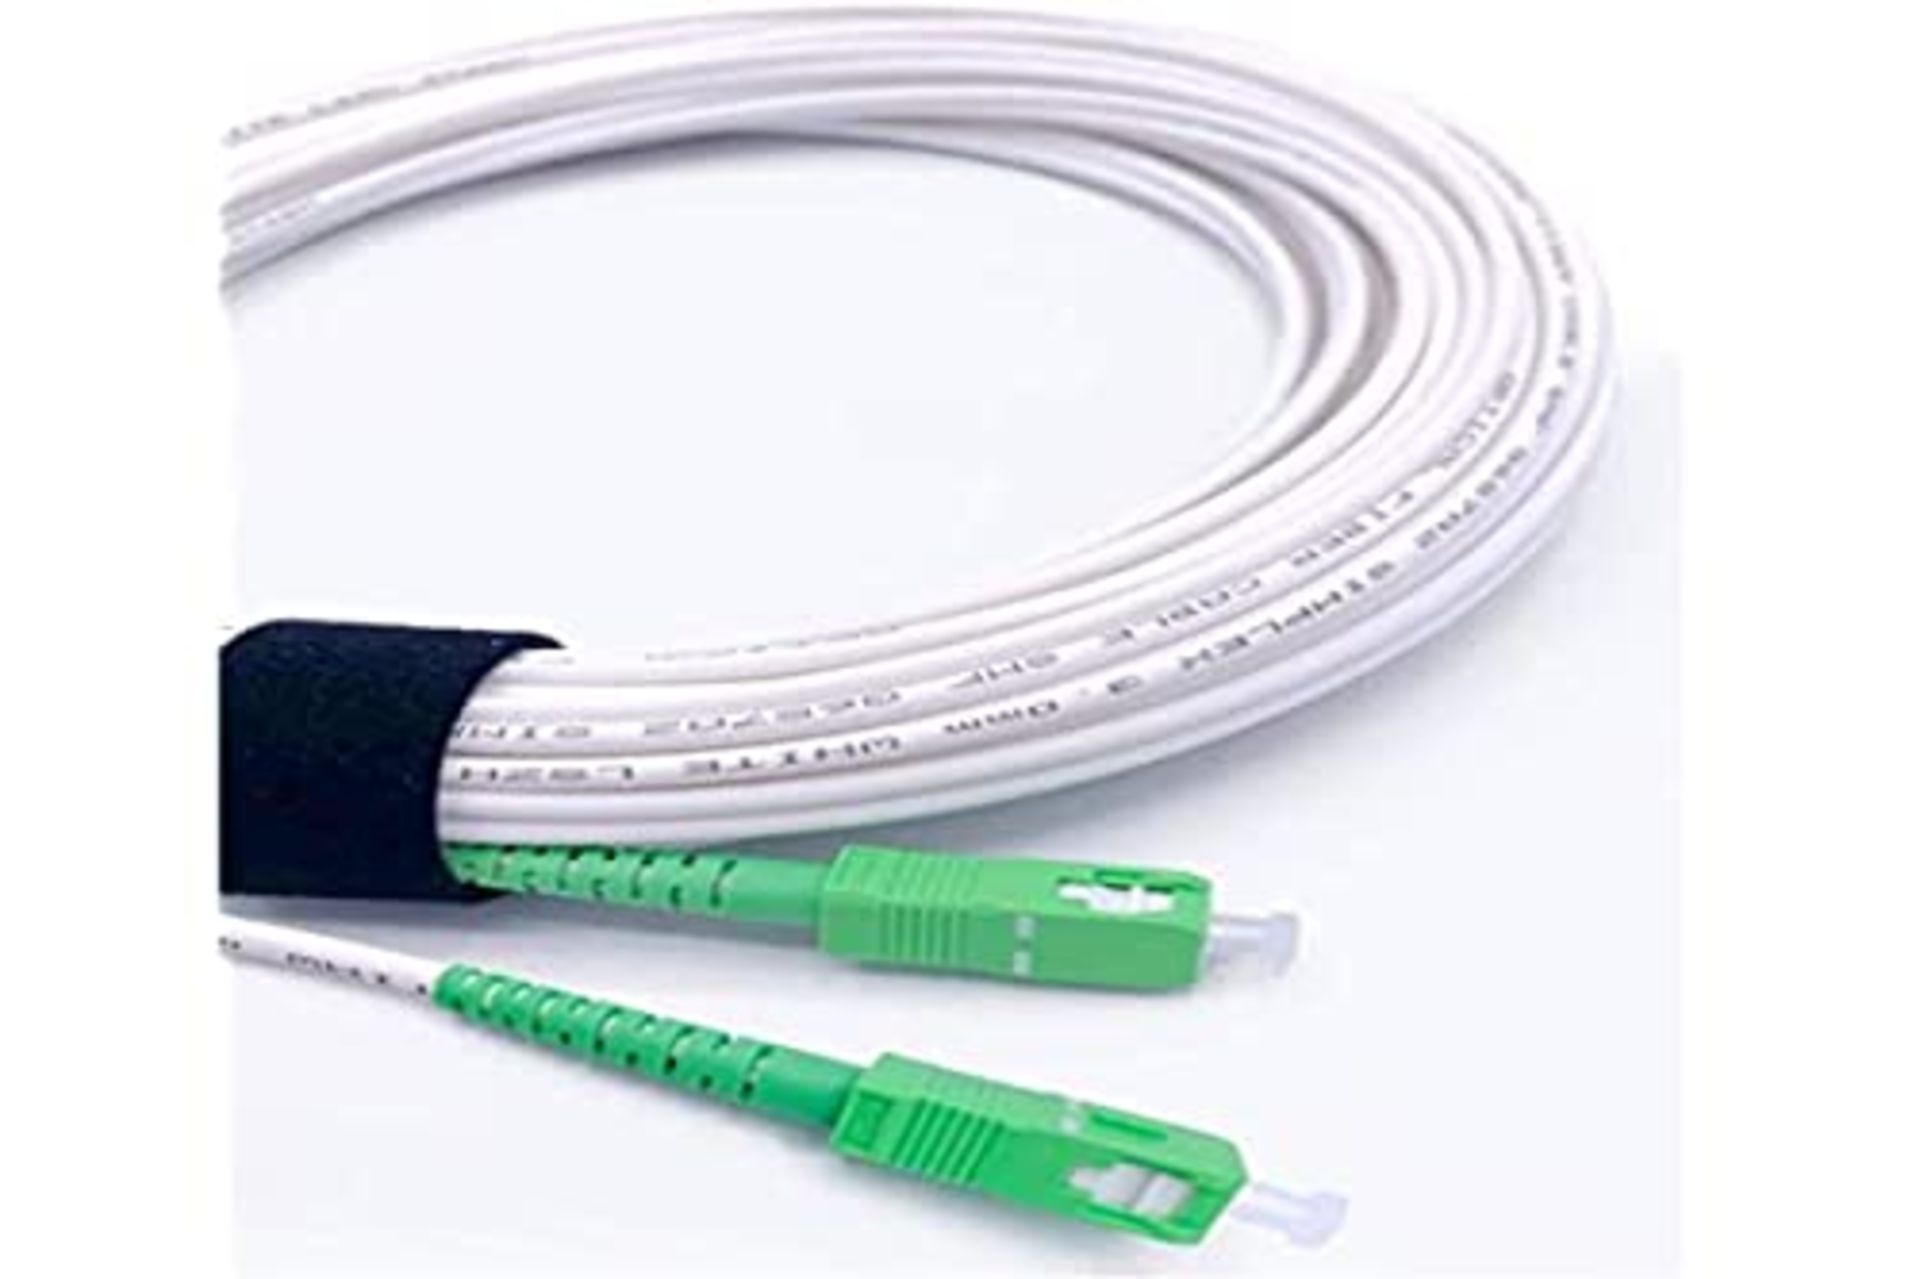 Elfcam - 25m Fiber Optic Cable for Orange Livebox, SFR Red Box and Bouygues Telecom Bb